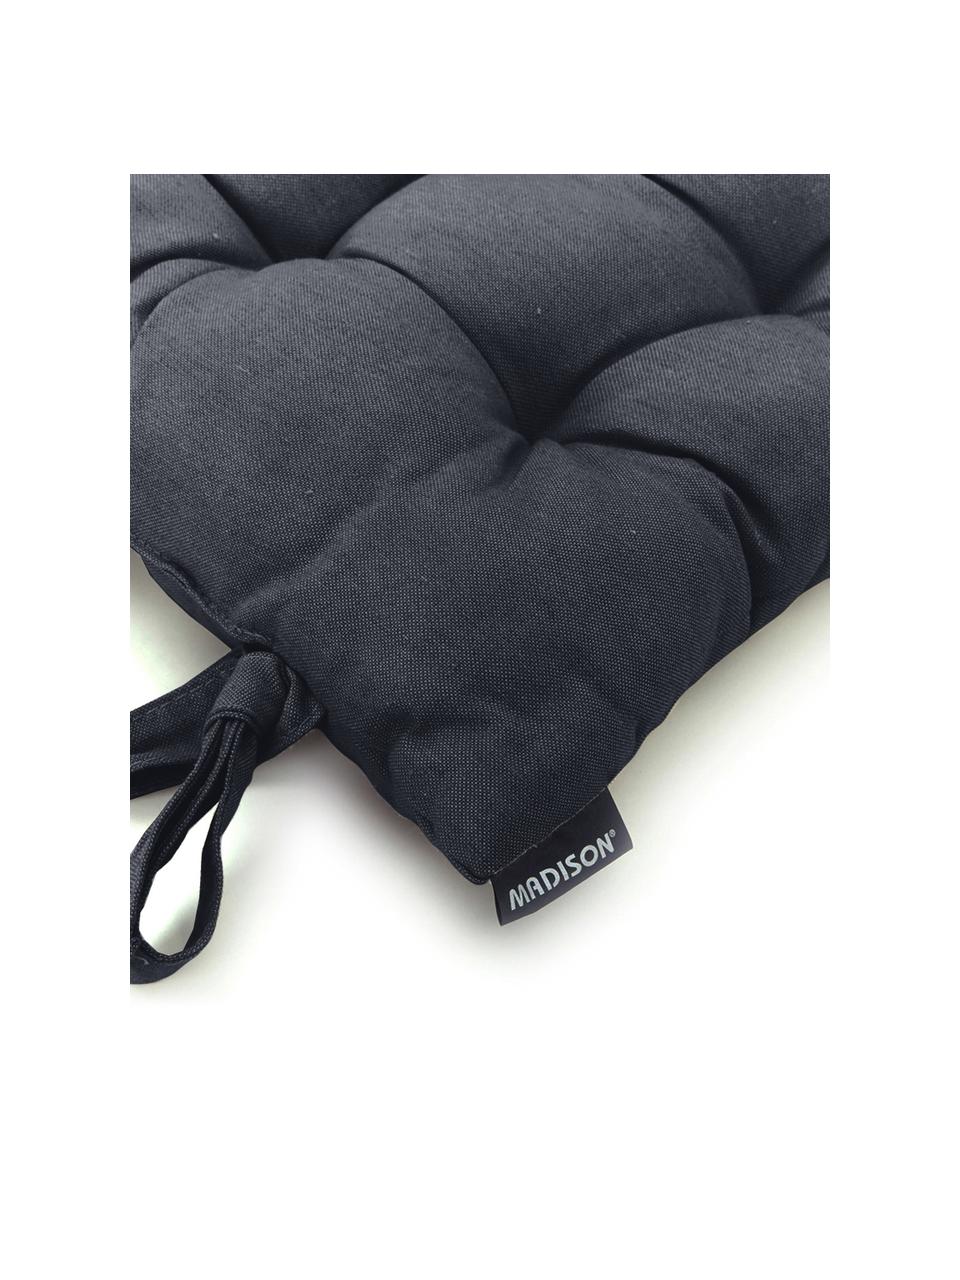 Poduszka siedziska na krzesło Panama, Tapicerka: 50% bawełna, 45% polieste, Antracytowy, S 45 x D 45 cm